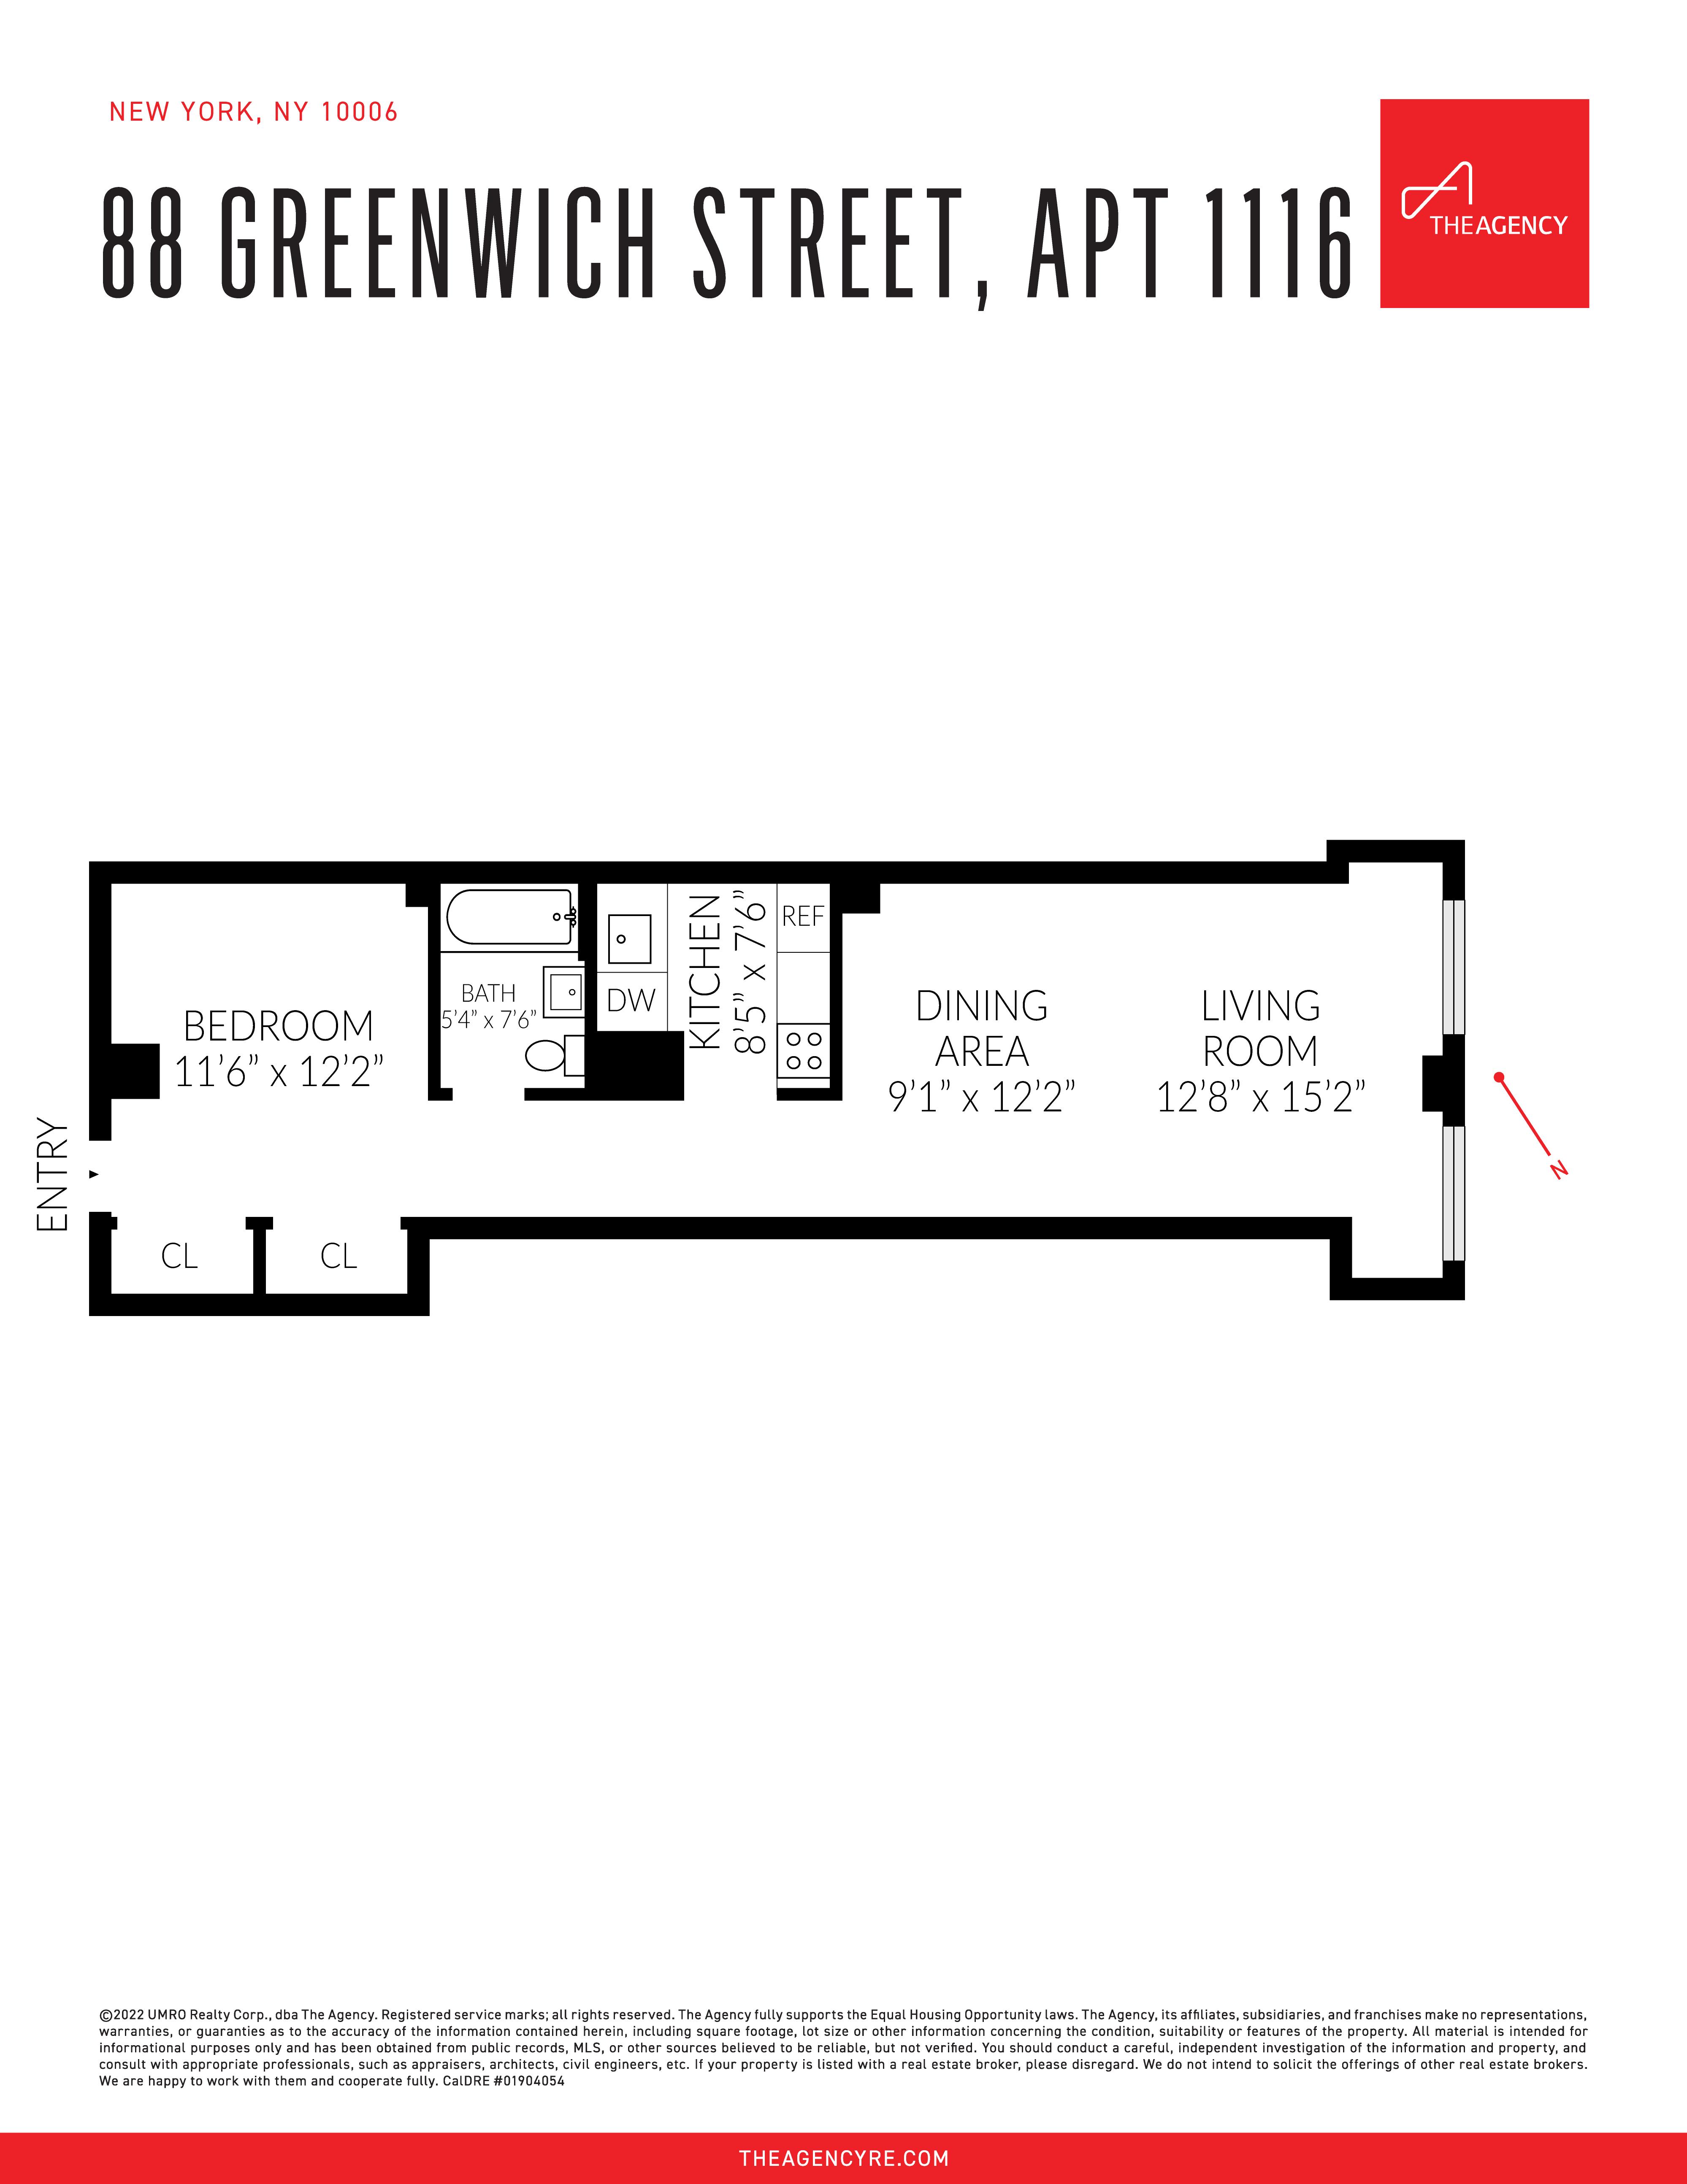 Floorplan for 88 Greenwich Street, 1116